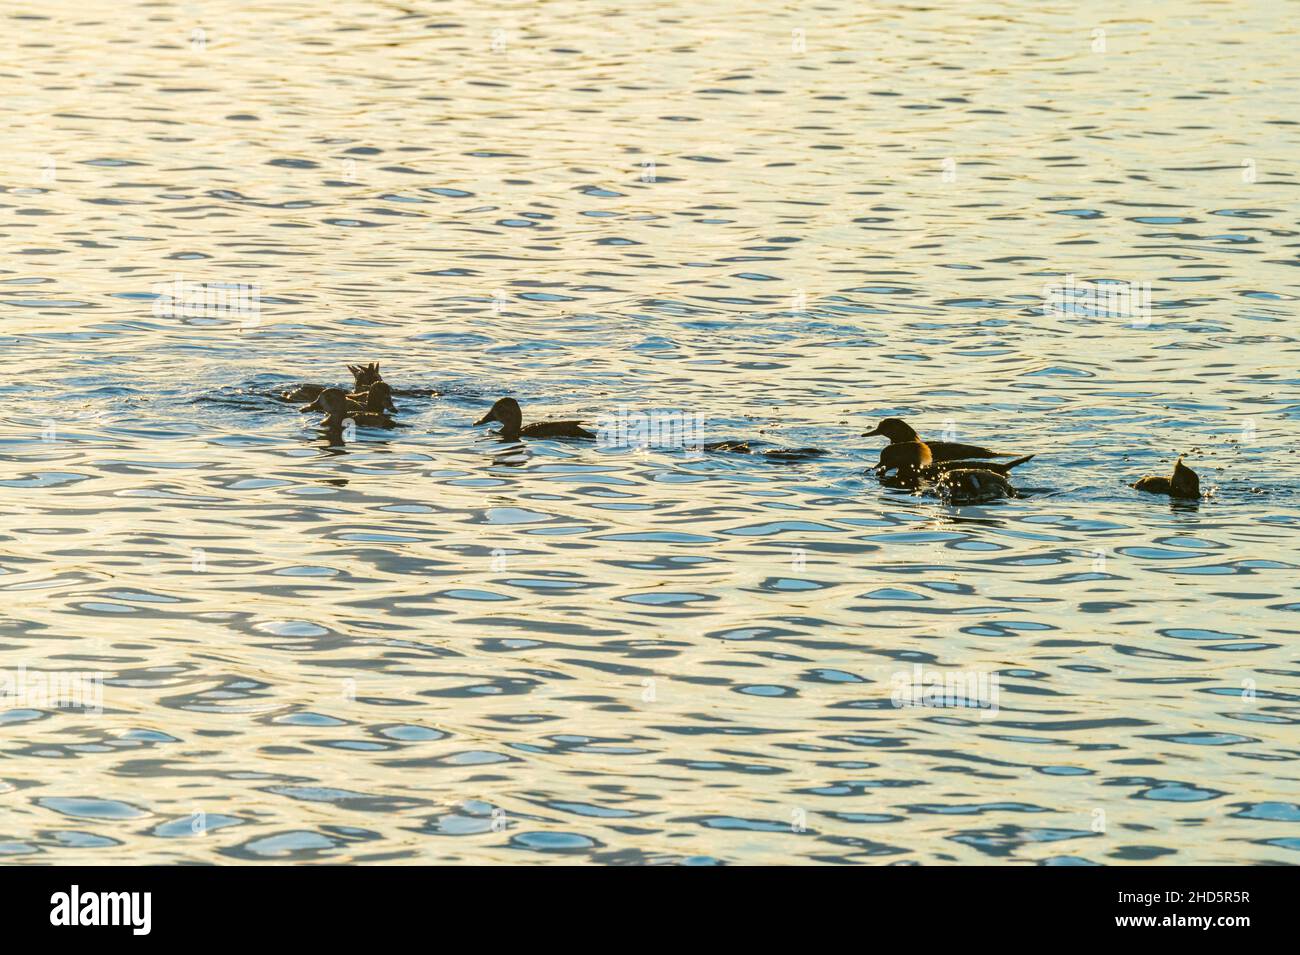 Hooded Merganser ducks on water at sunset  at Merritt Island National Wildlife Refuge, Florida Stock Photo